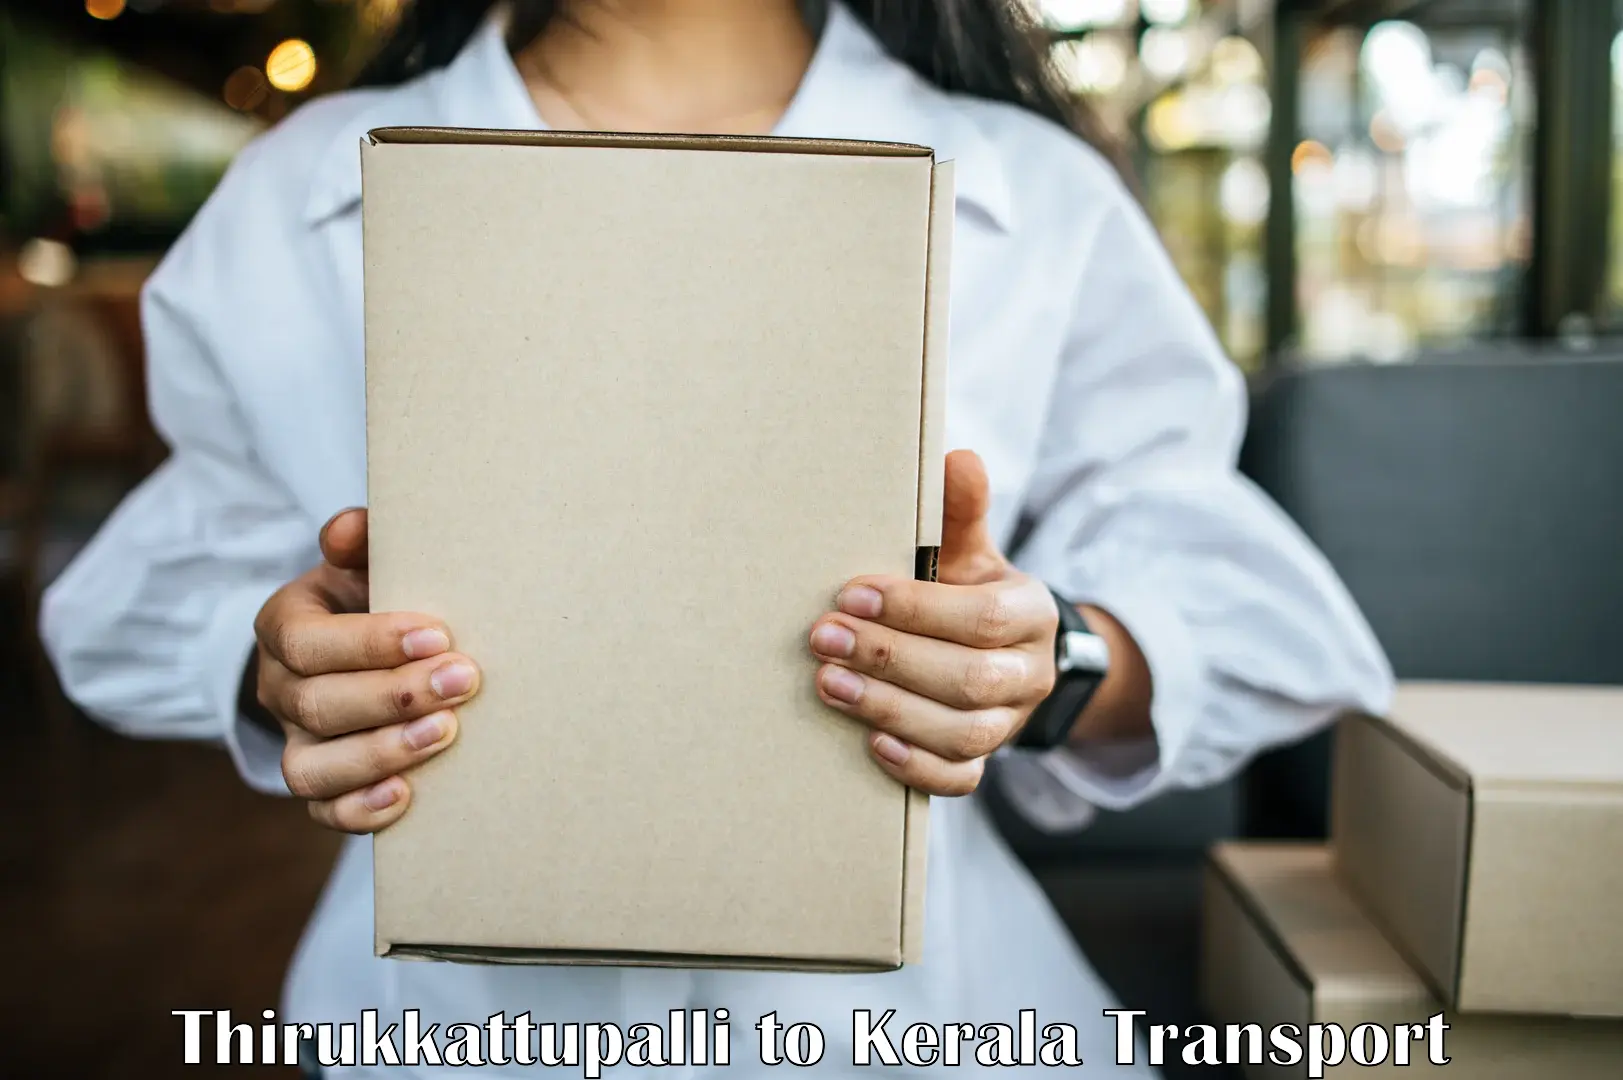 Truck transport companies in India Thirukkattupalli to Trivandrum